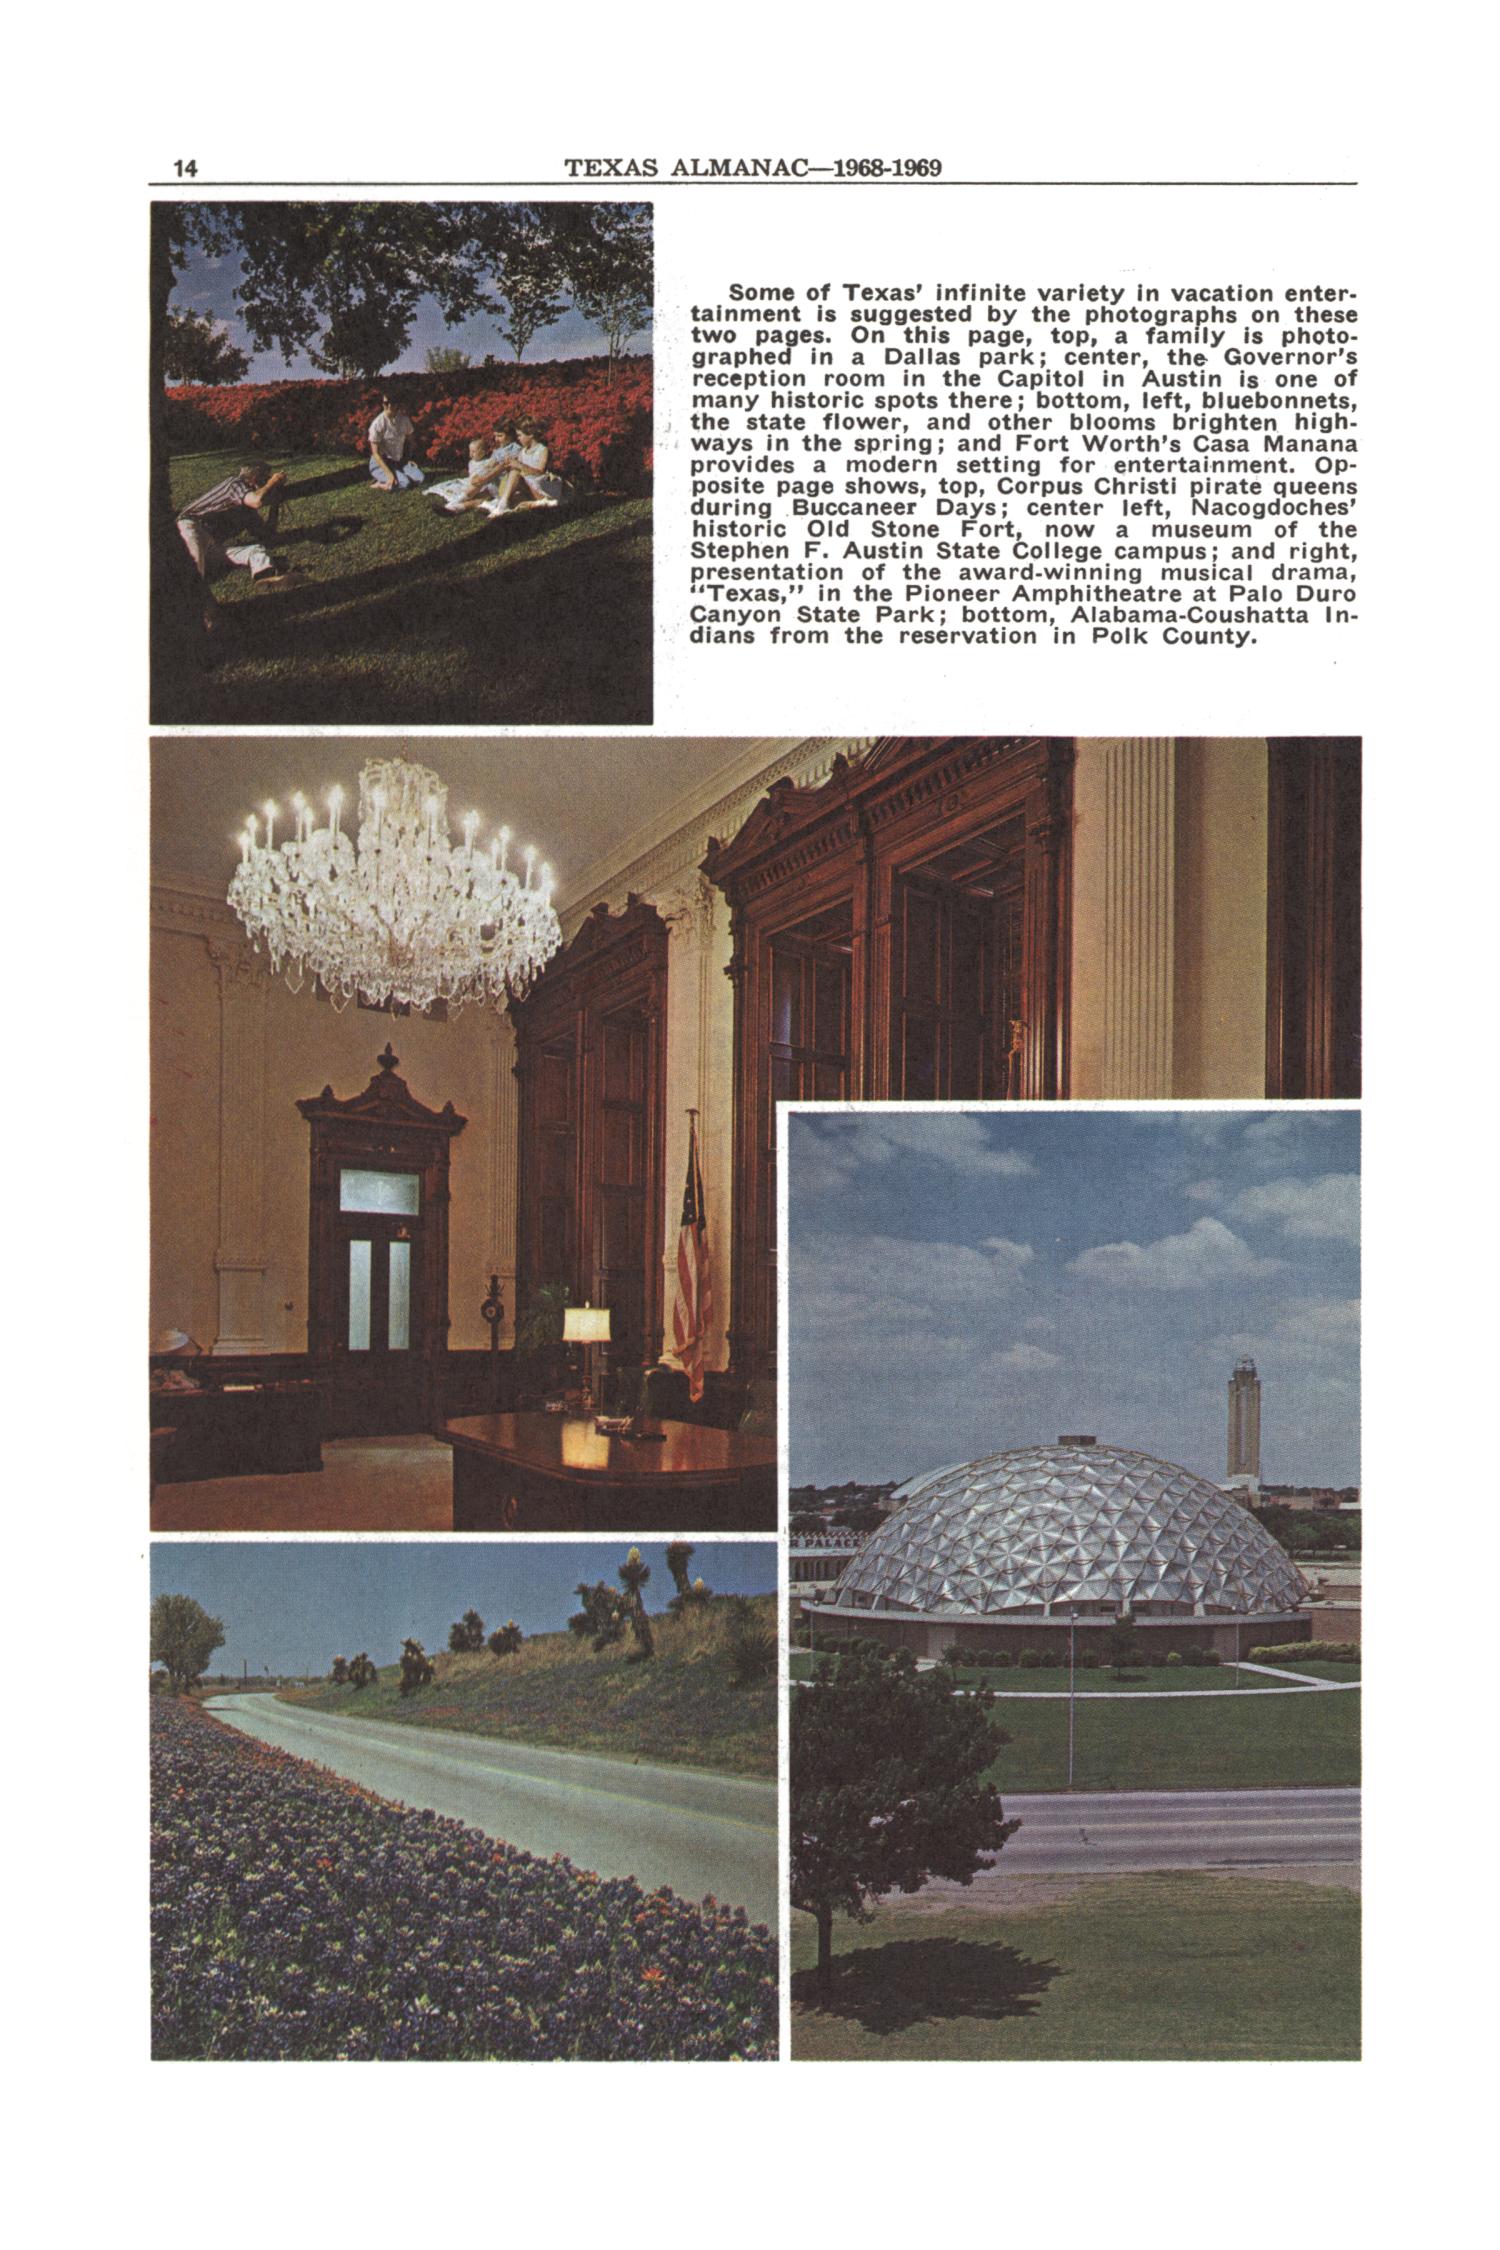 Texas Almanac, 1968-1969
                                                
                                                    14
                                                